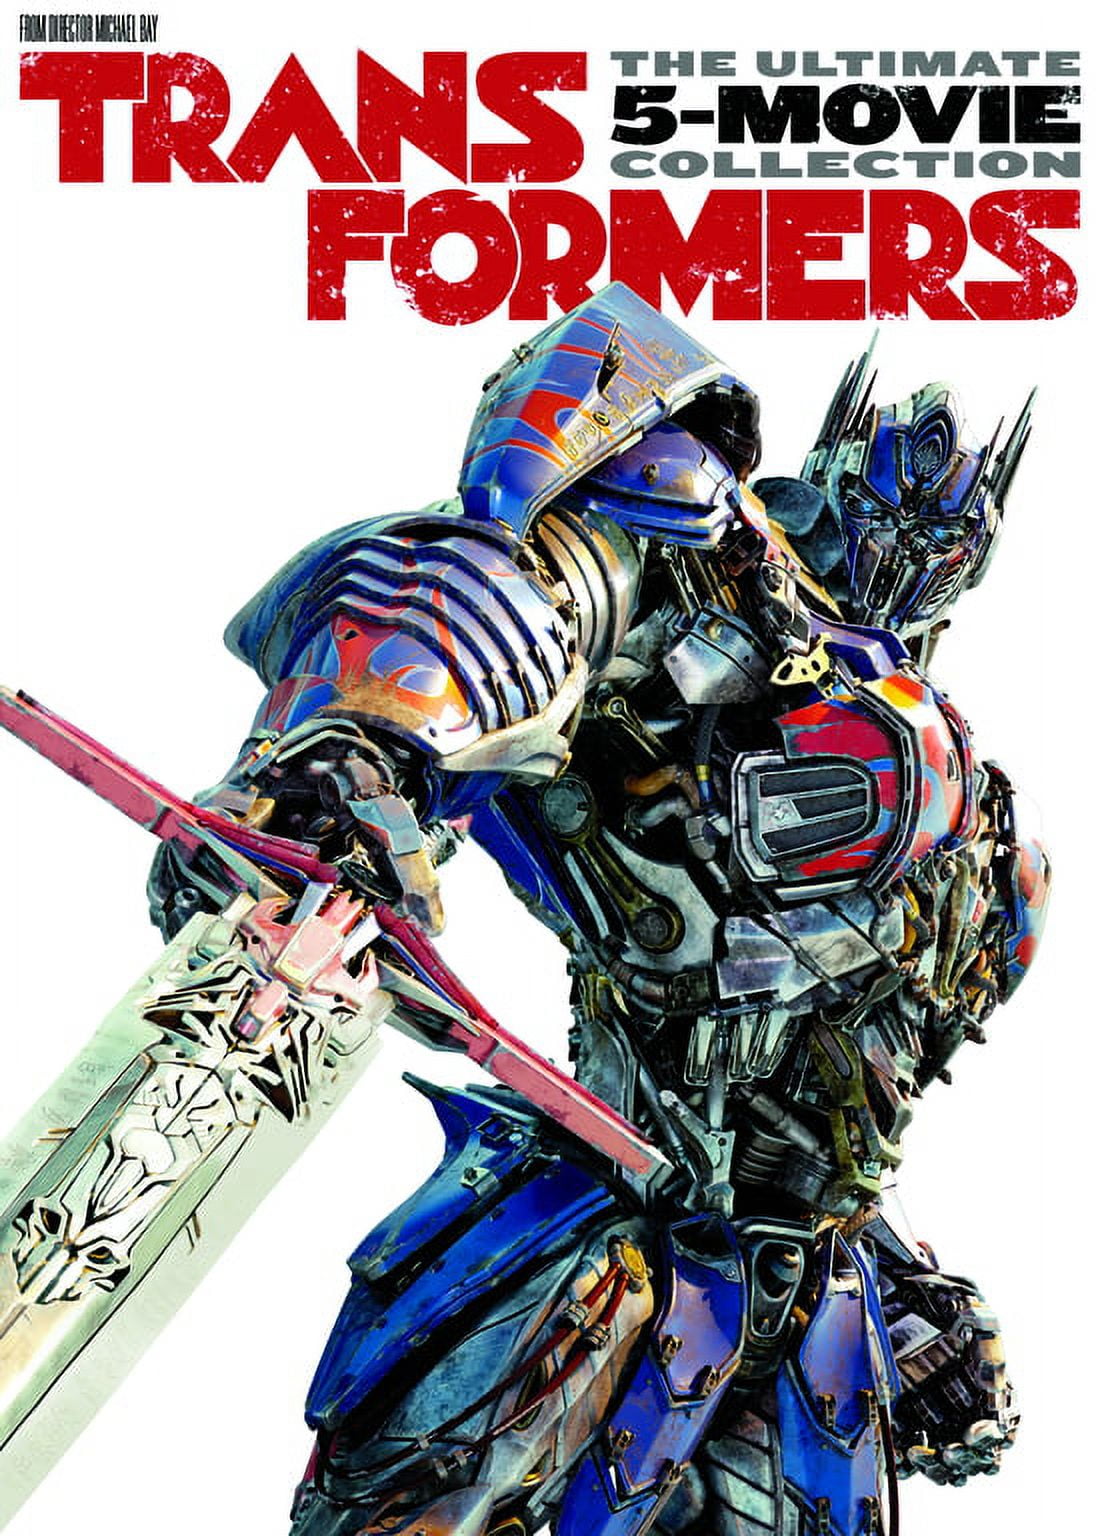 Box especial com 5 filmes!  Transformers: O Último Cavaleiro